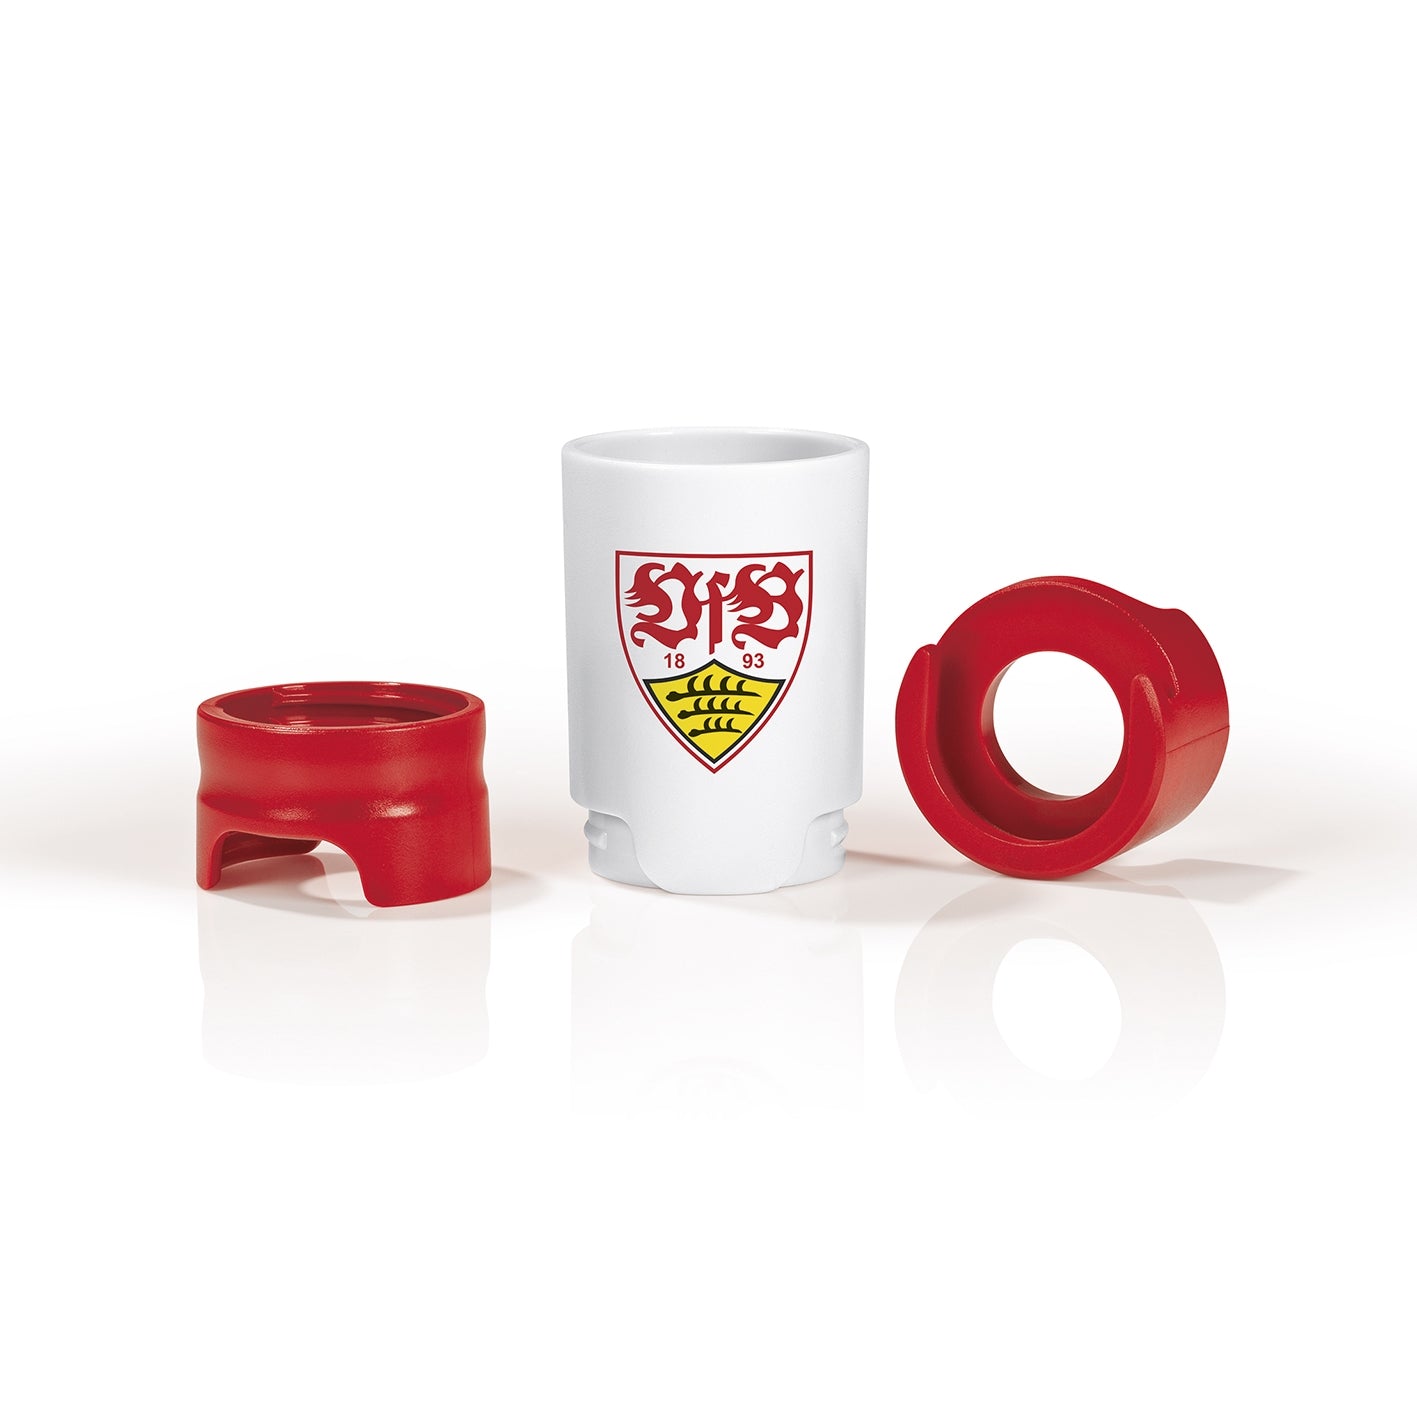 Bier-Aufbereiter im VfB Stuttgart-Design